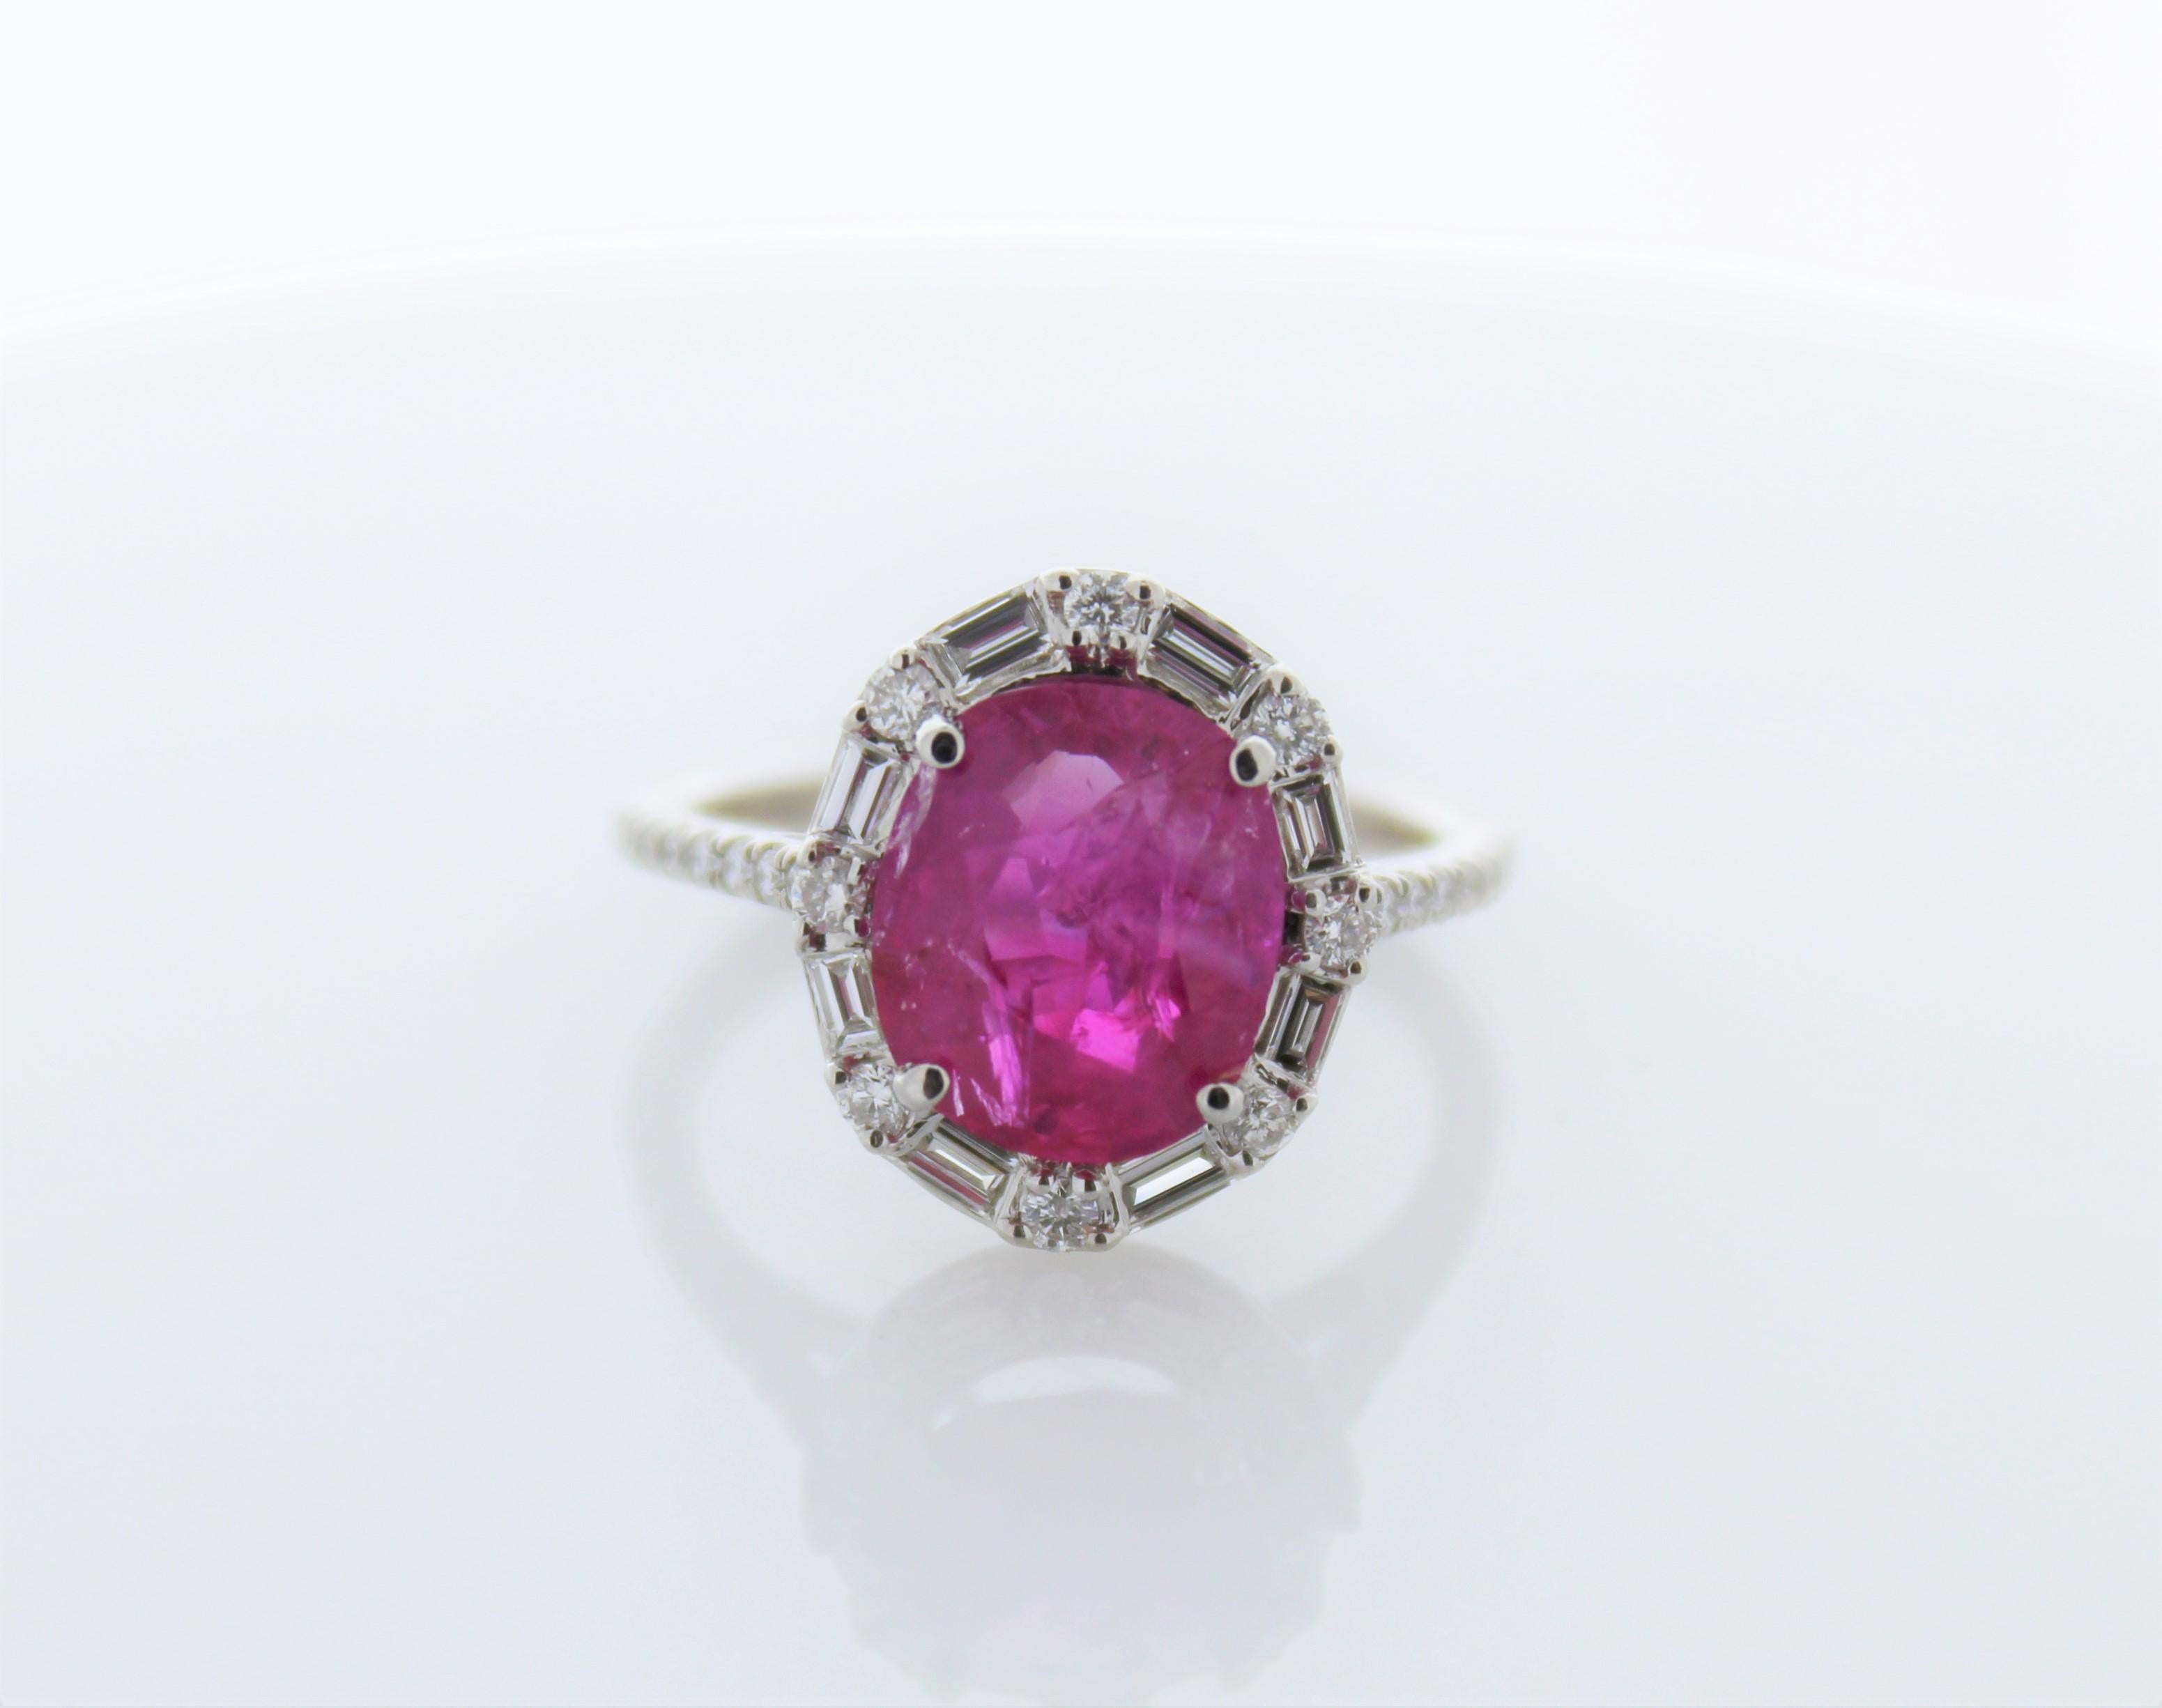 Dieser zeitlose Ring mit königlichem Rubin und Diamanten ist stilvoll und raffiniert. Der Rubin mit einem Gewicht von 3,67 Karat, gepaart mit 32 natürlichen Diamanten von insgesamt 0,53 Karat, ist ein wahrer Augenschmaus. Der Ring ist aus glattem 14